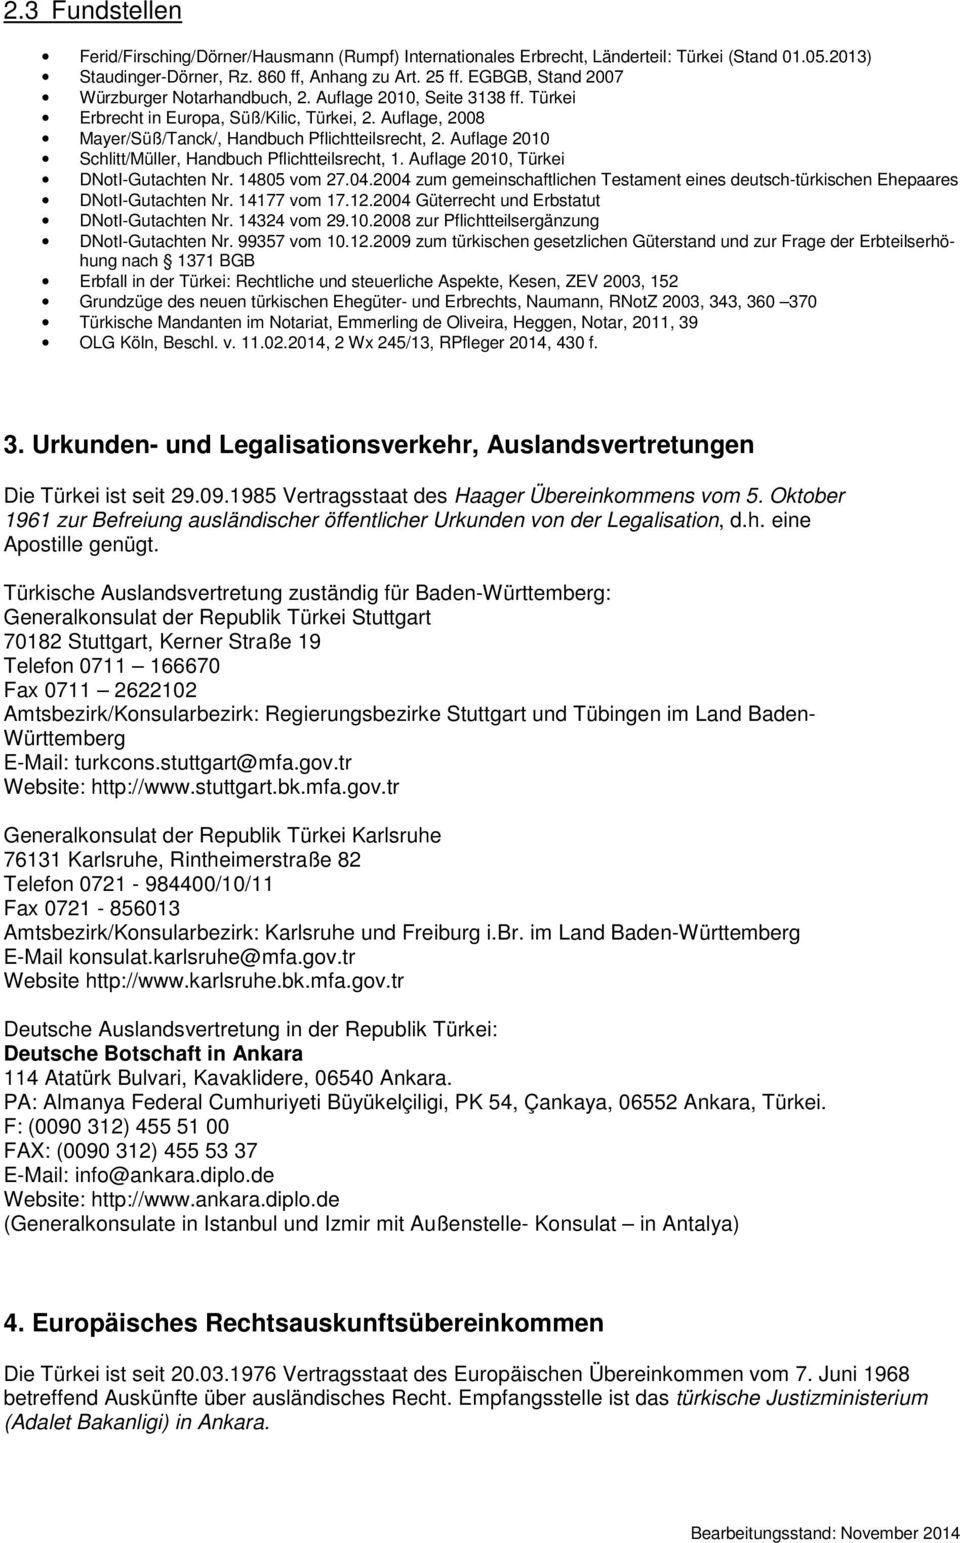 Auflage 2010 Schlitt/Müller, Handbuch Pflichtteilsrecht, 1. Auflage 2010, Türkei DNotI-Gutachten Nr. 14805 vom 27.04.